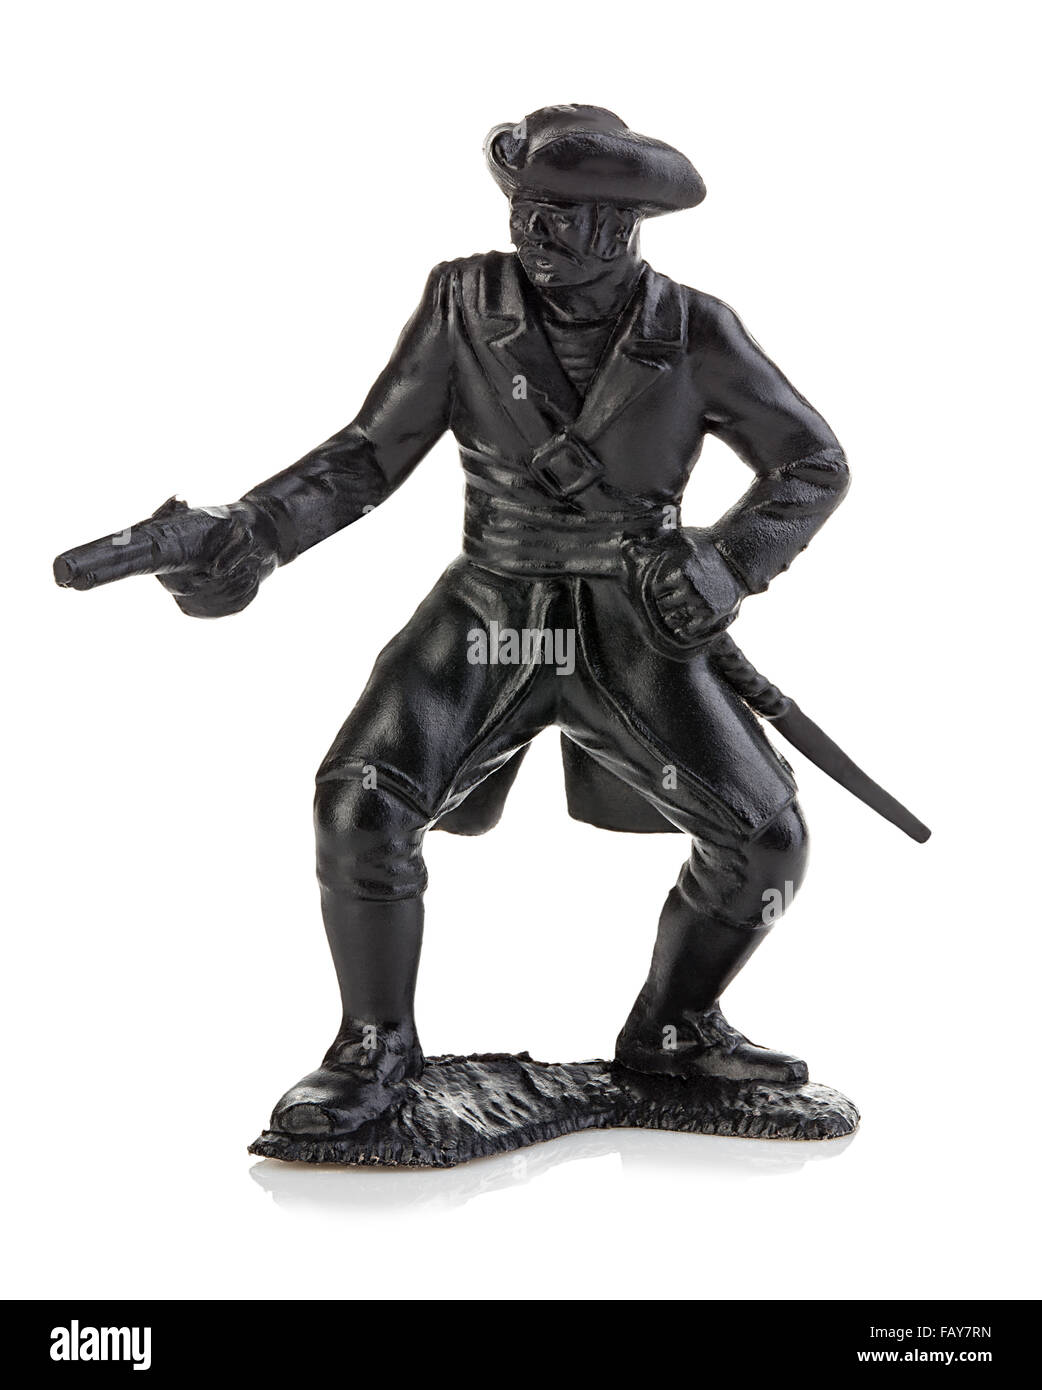 Pirate en colère avec gun close-up isolé sur un fond blanc. Figurine miniature d'un jouet pour enfants. Banque D'Images